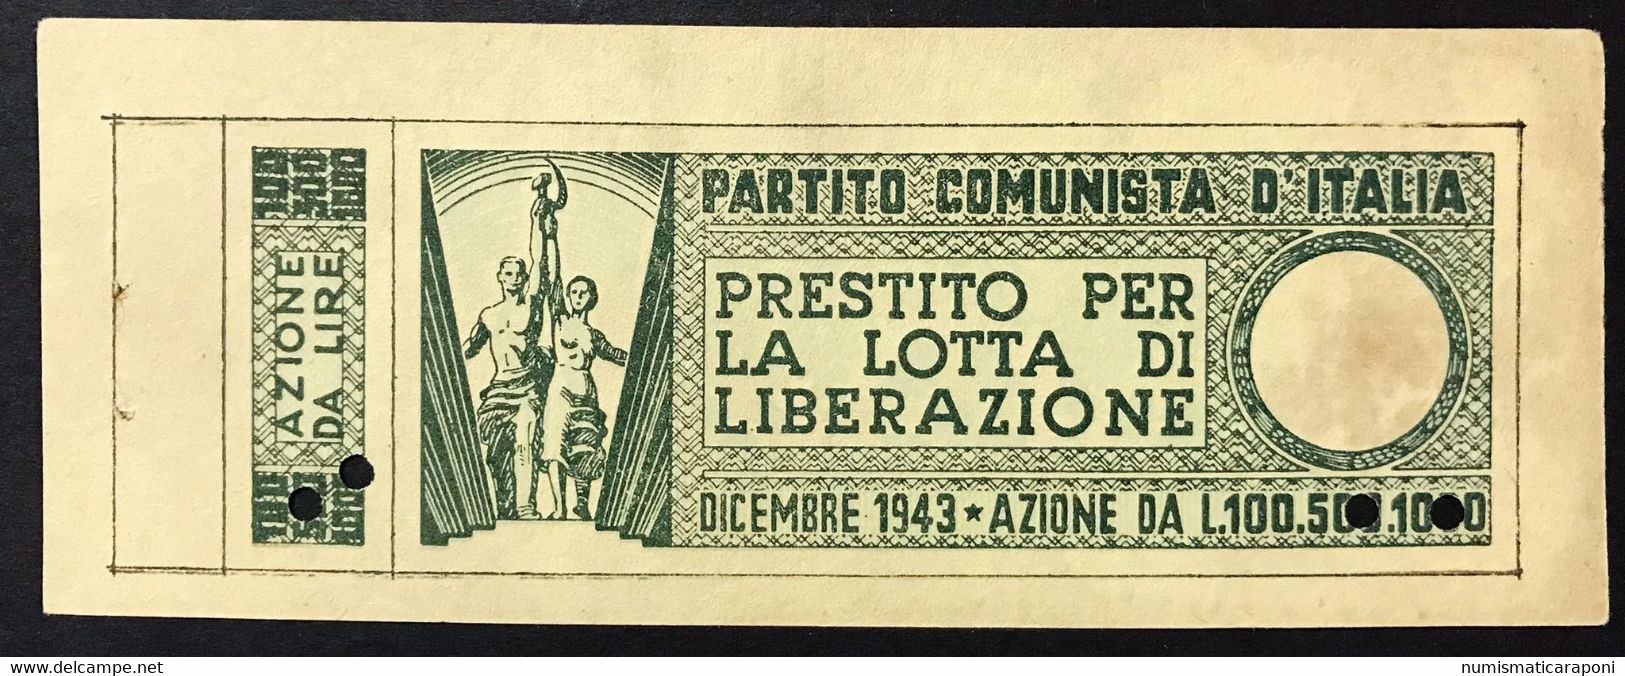 100 LIRE PARTITO COMUNISTA D'ITALIA LOTTA DI LIBERAZIONE DICEMBRE 1943 Lotto 4166 - Geallieerde Bezetting Tweede Wereldoorlog